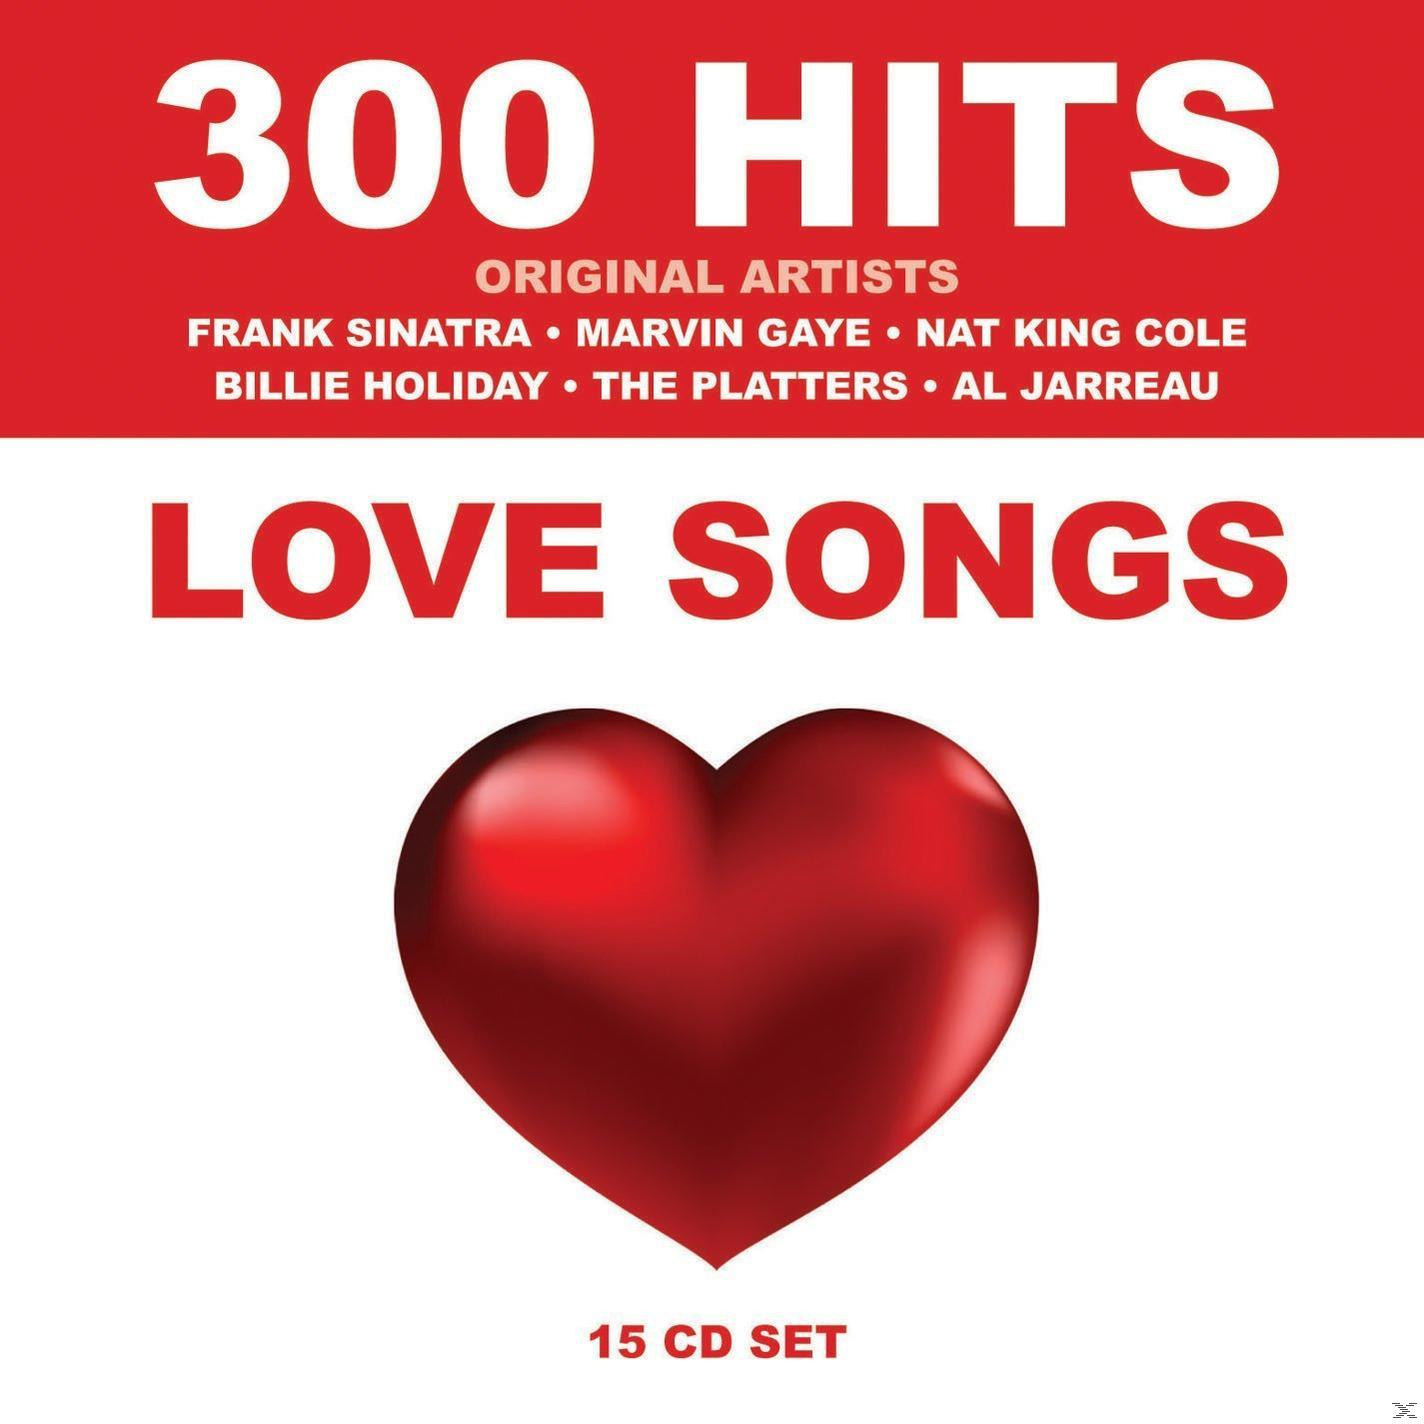 (CD) Hits - VARIOUS Love - Songs - 300